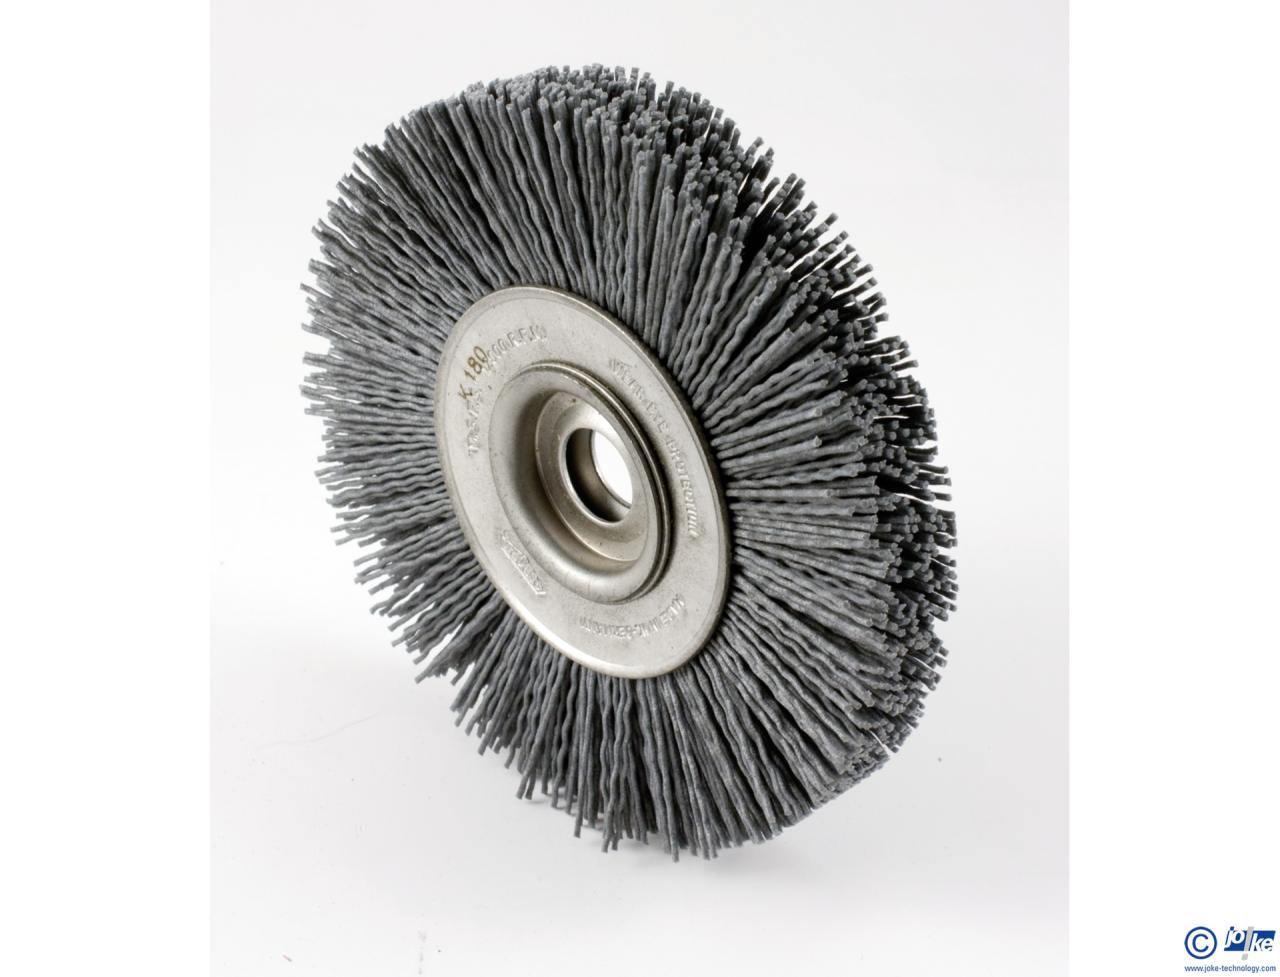 Disques abrasifs en carbure de silicium - Ø150 mm